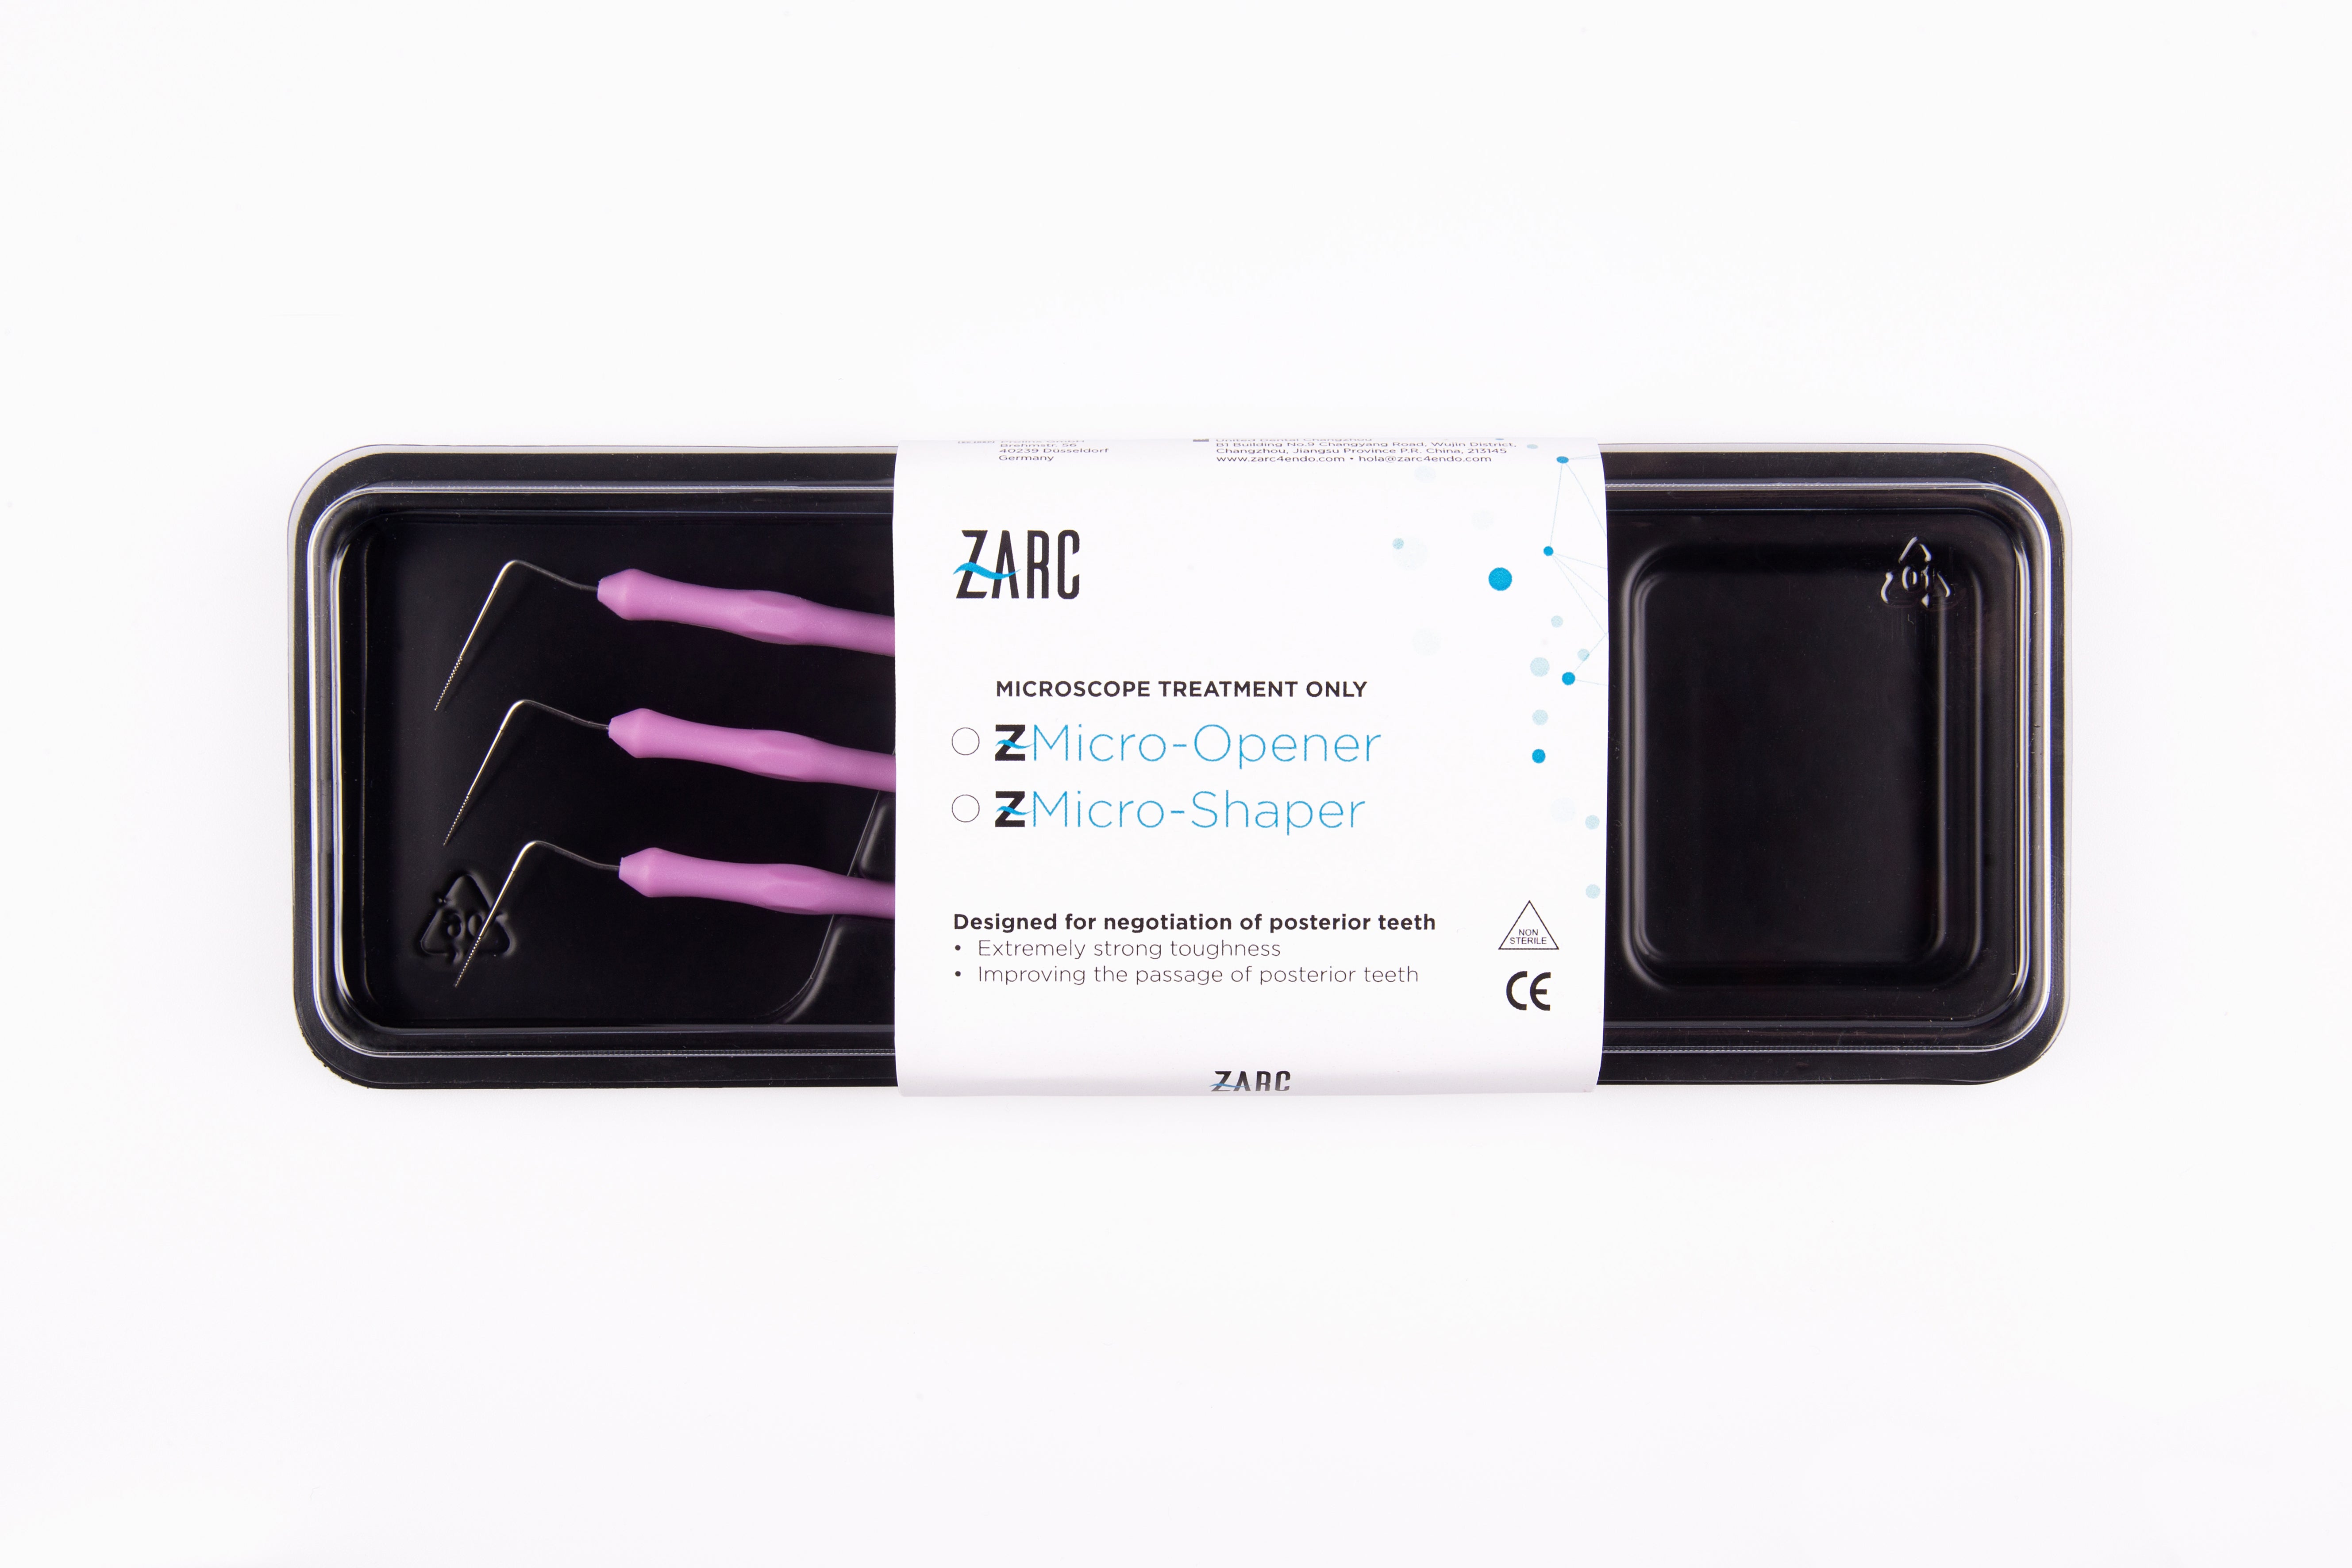 Z-Micro Opener